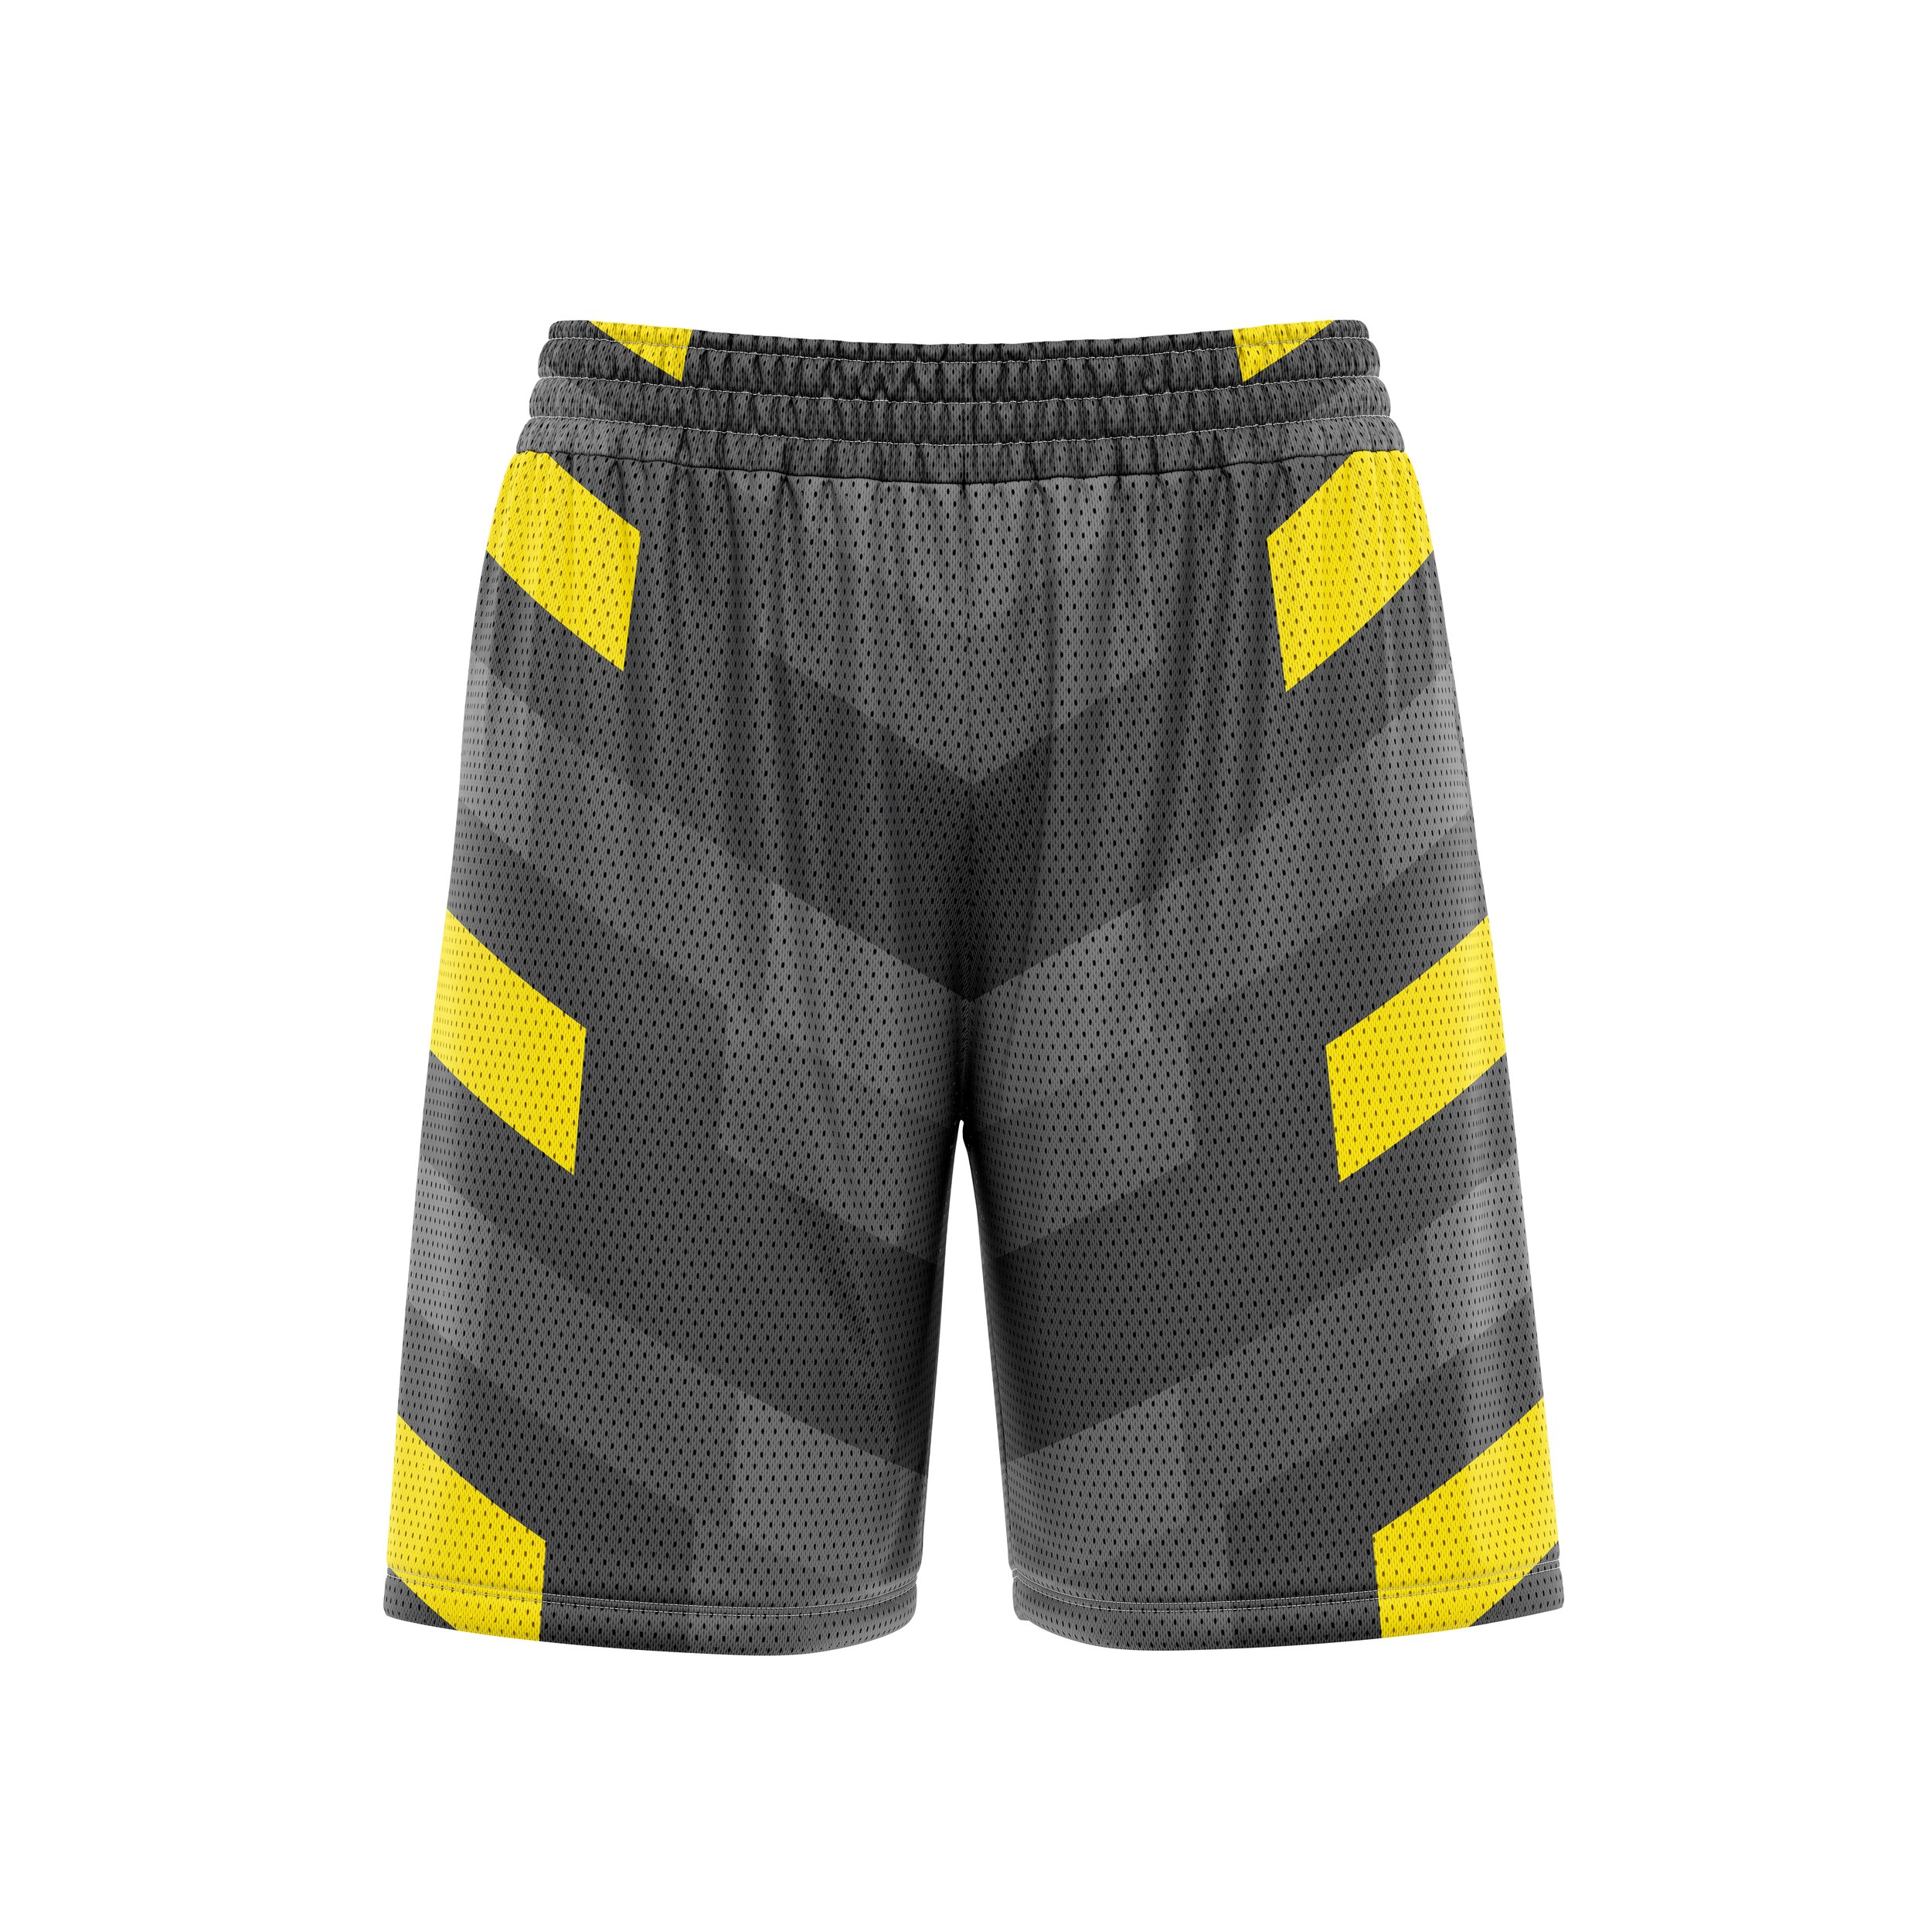 Soccer shorts FOR WEB SITE.jpg